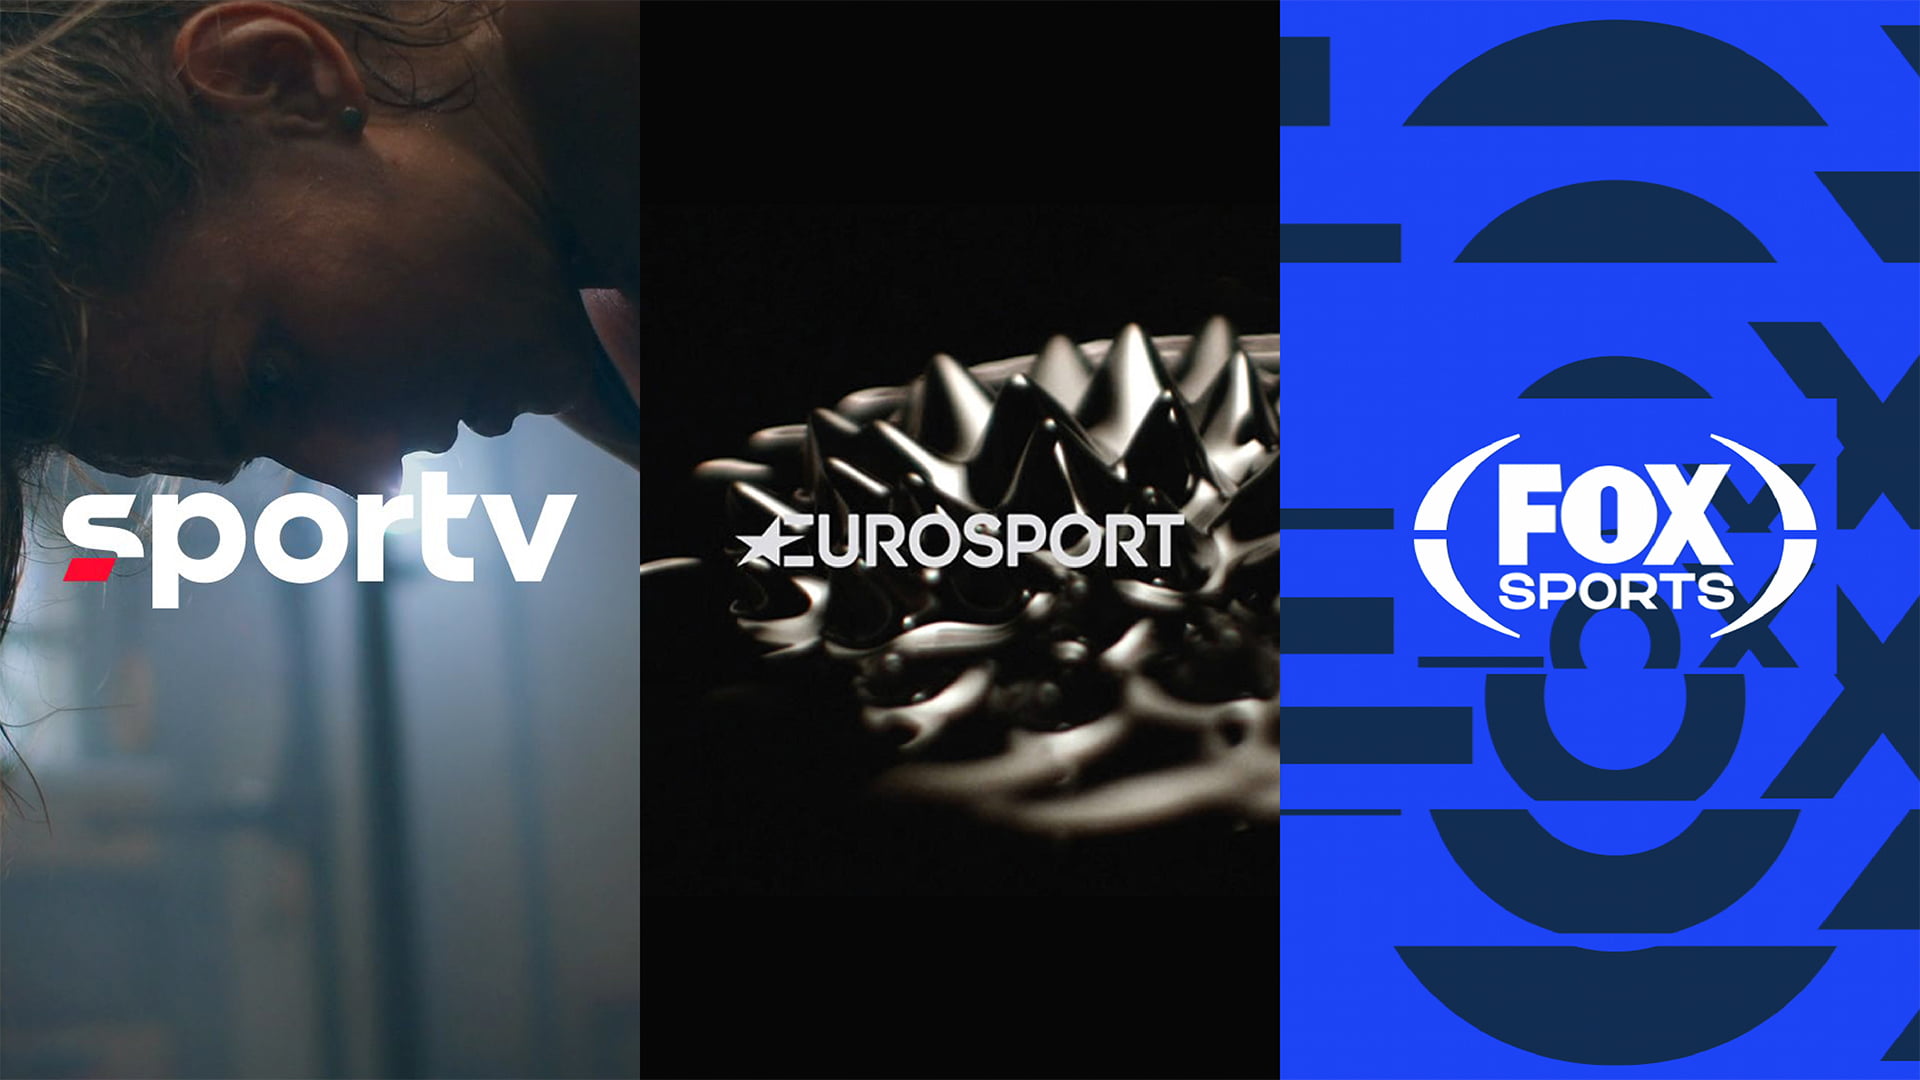 ¿Cómo afrontar el rebranding de un canal deportivo? Los casos de Sportv, Eurosport y Fox Sports